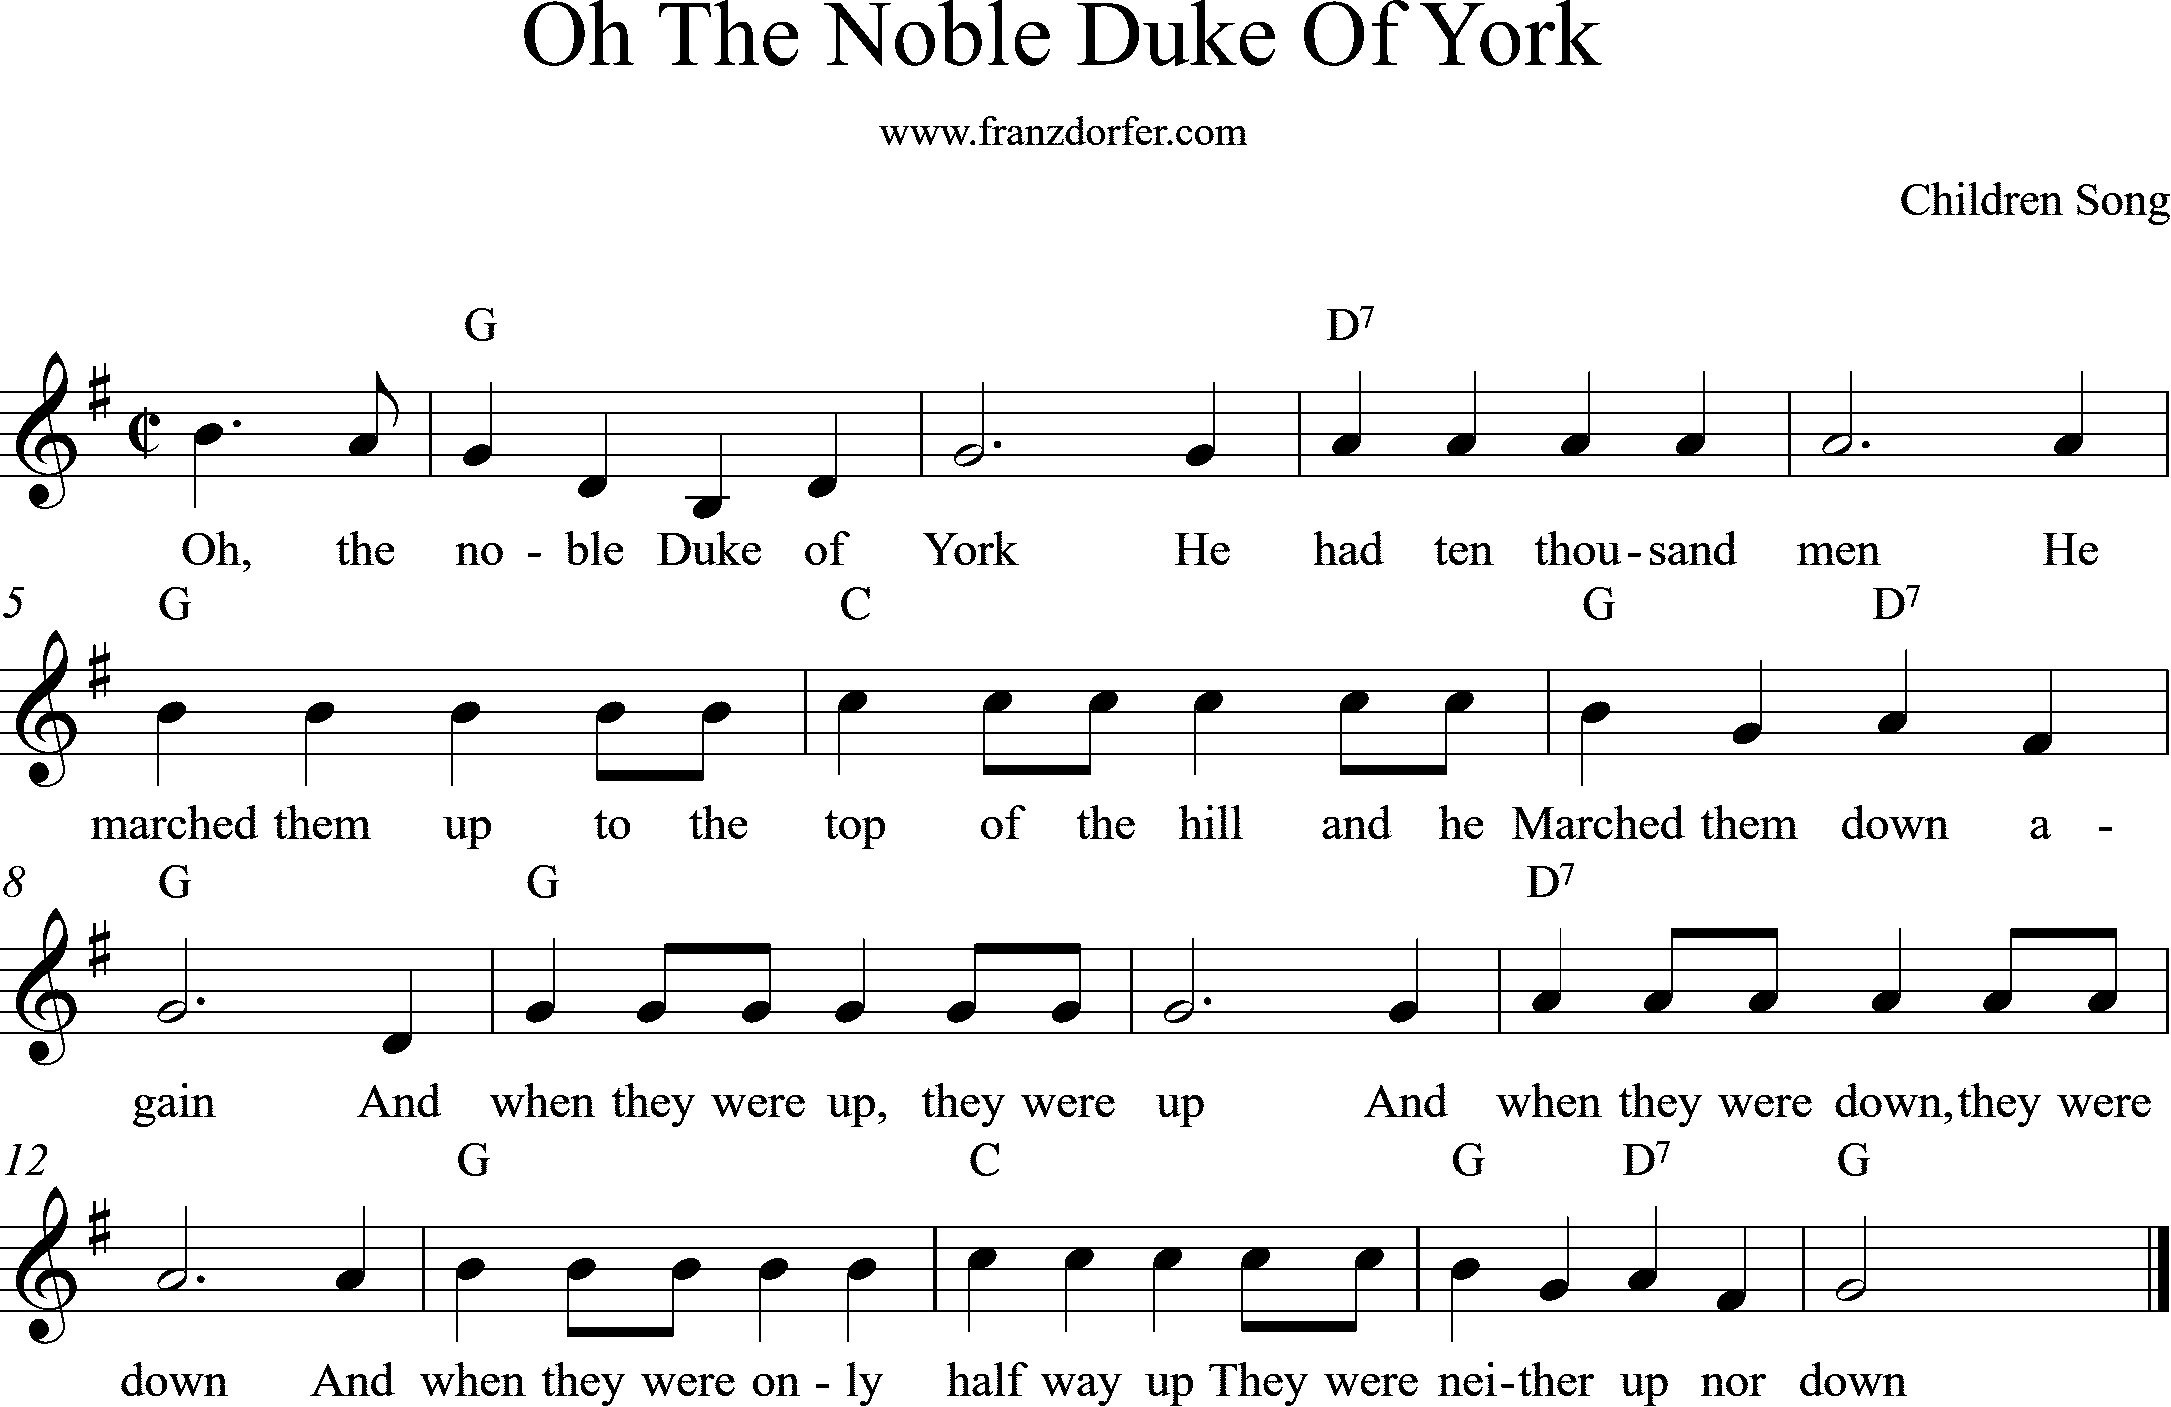 aheetmusic The Noble Duke